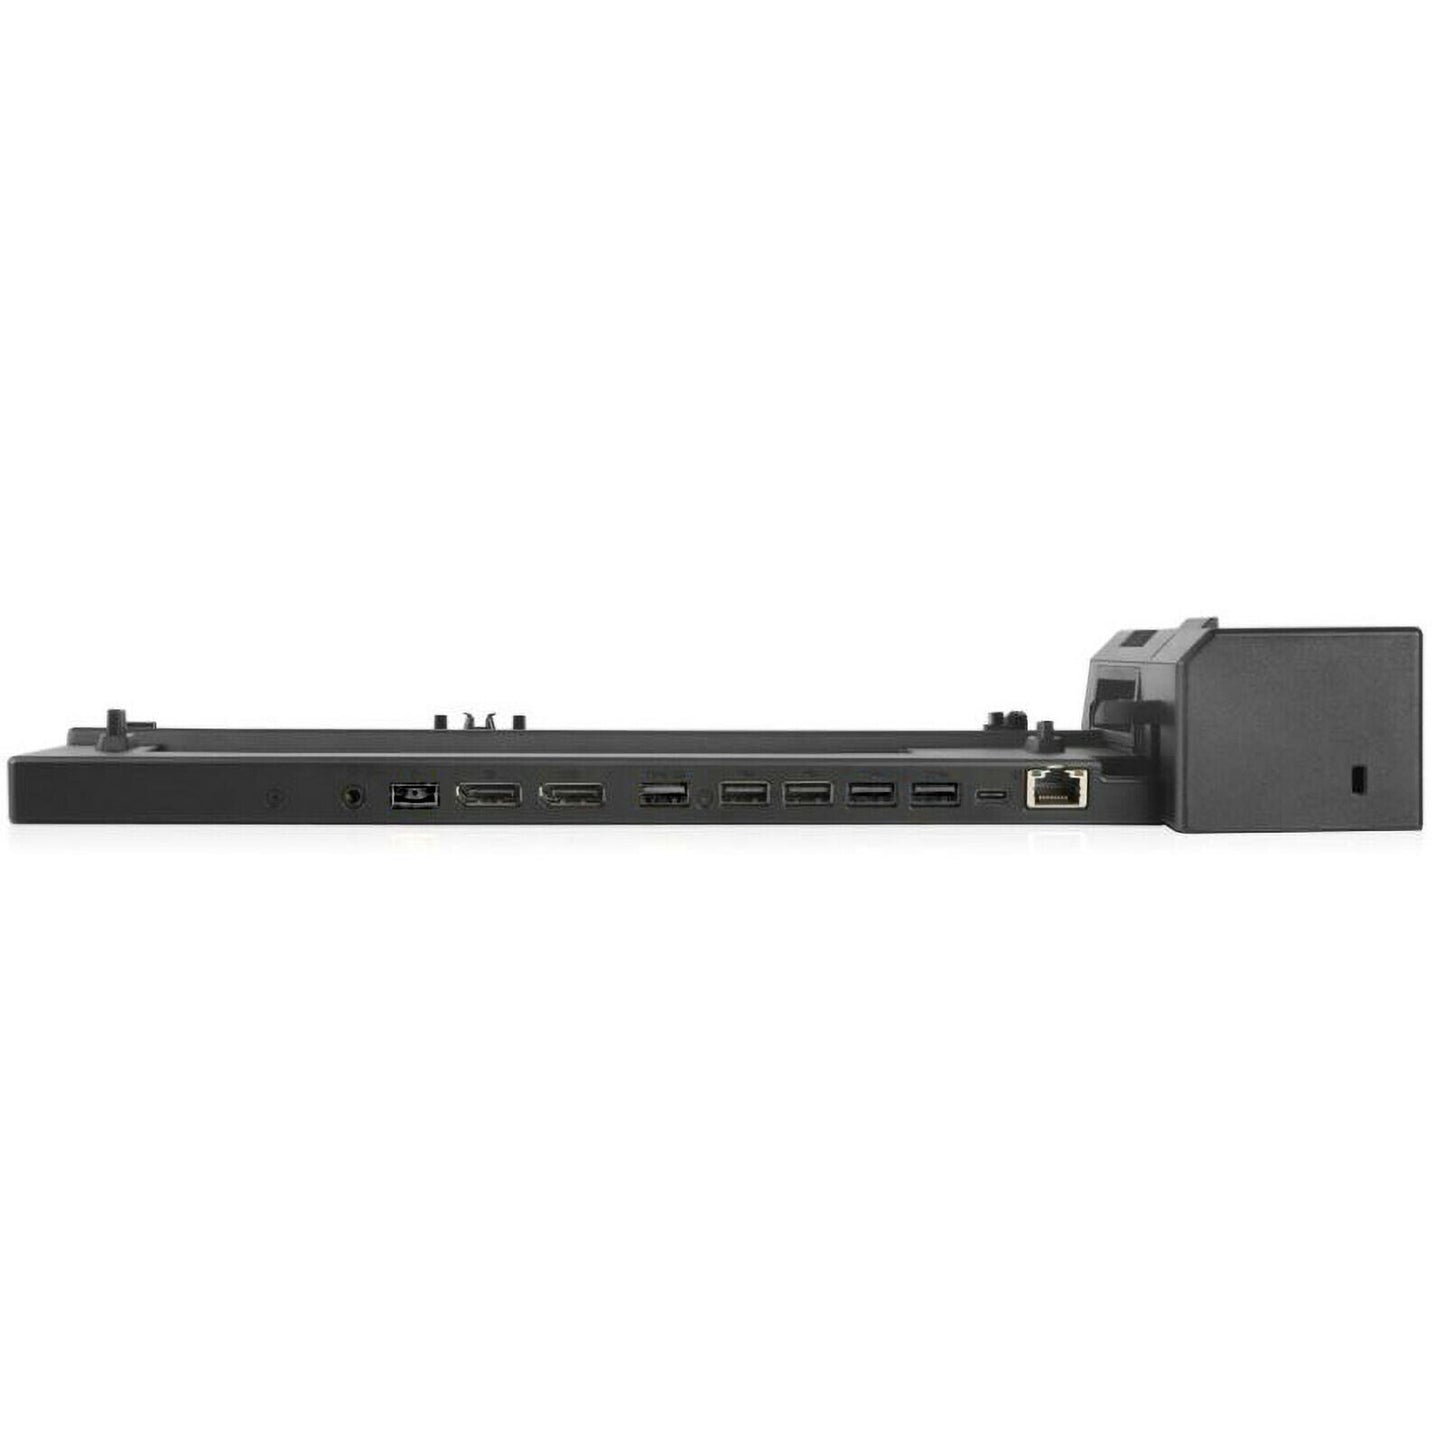 Lenovo ThinkPad Pro 135W Docking Station - 20T34310 Used